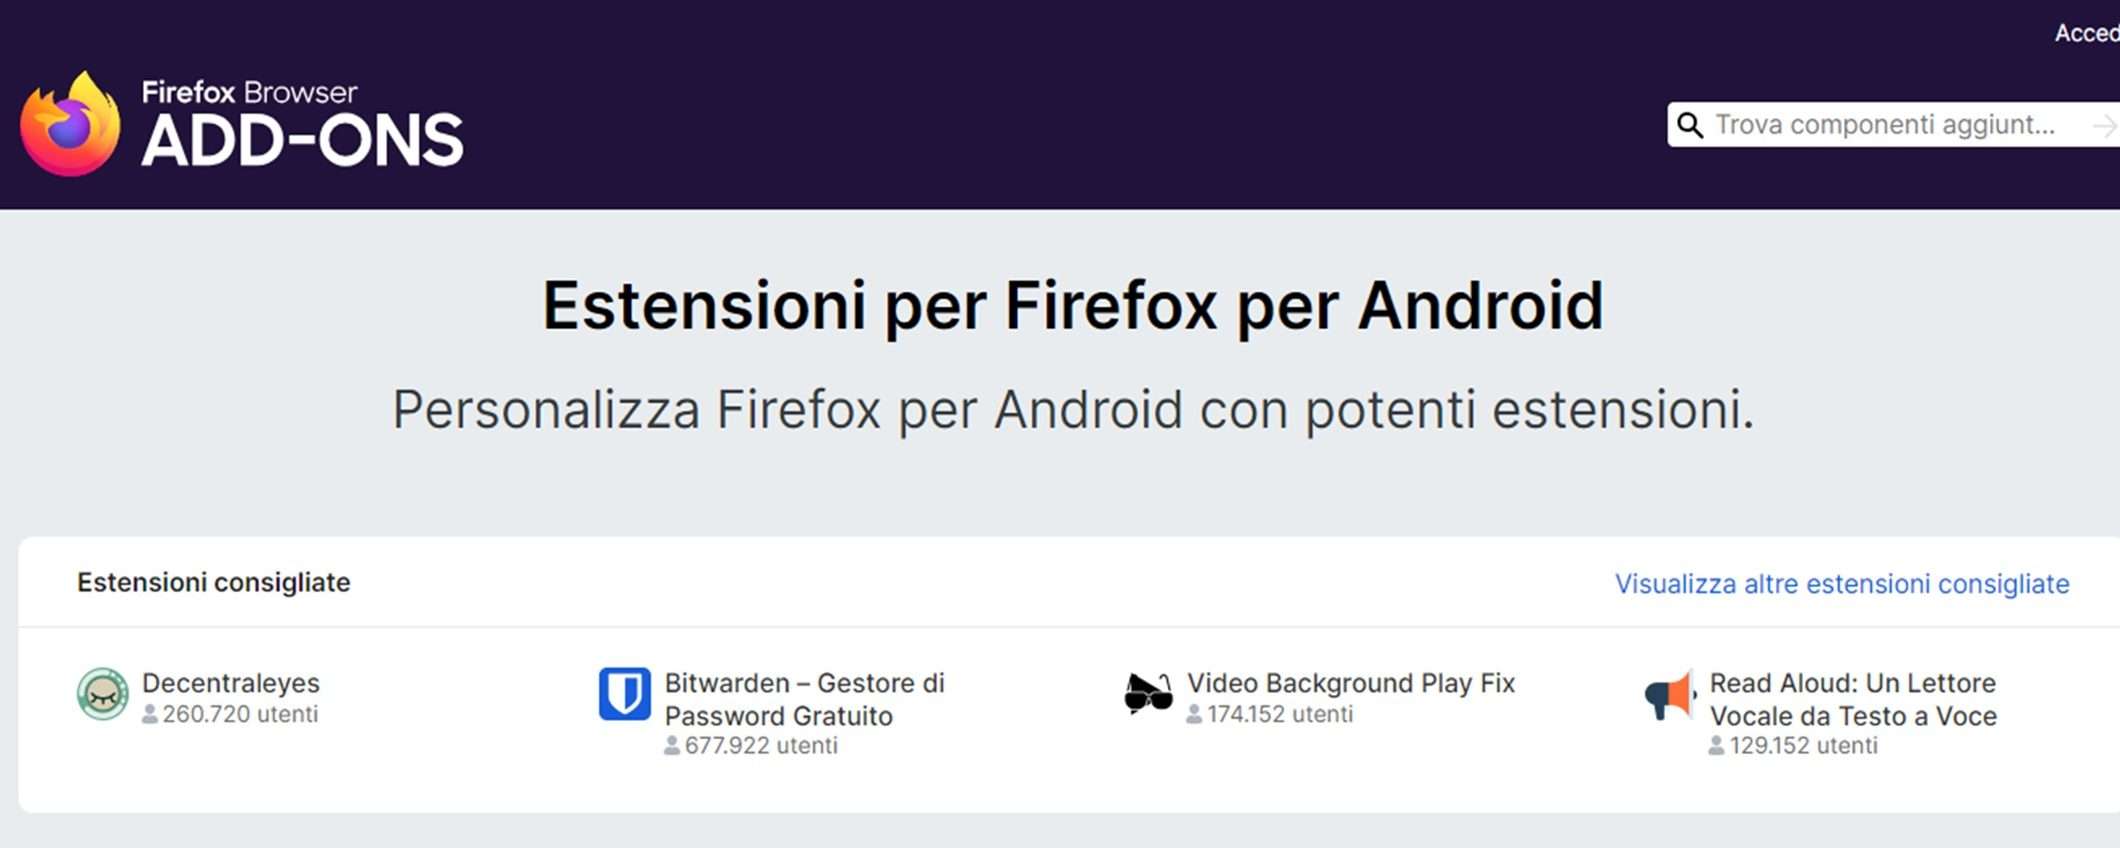 Mozilla Firefox: estensioni disponibili su Android dal 14 dicembre